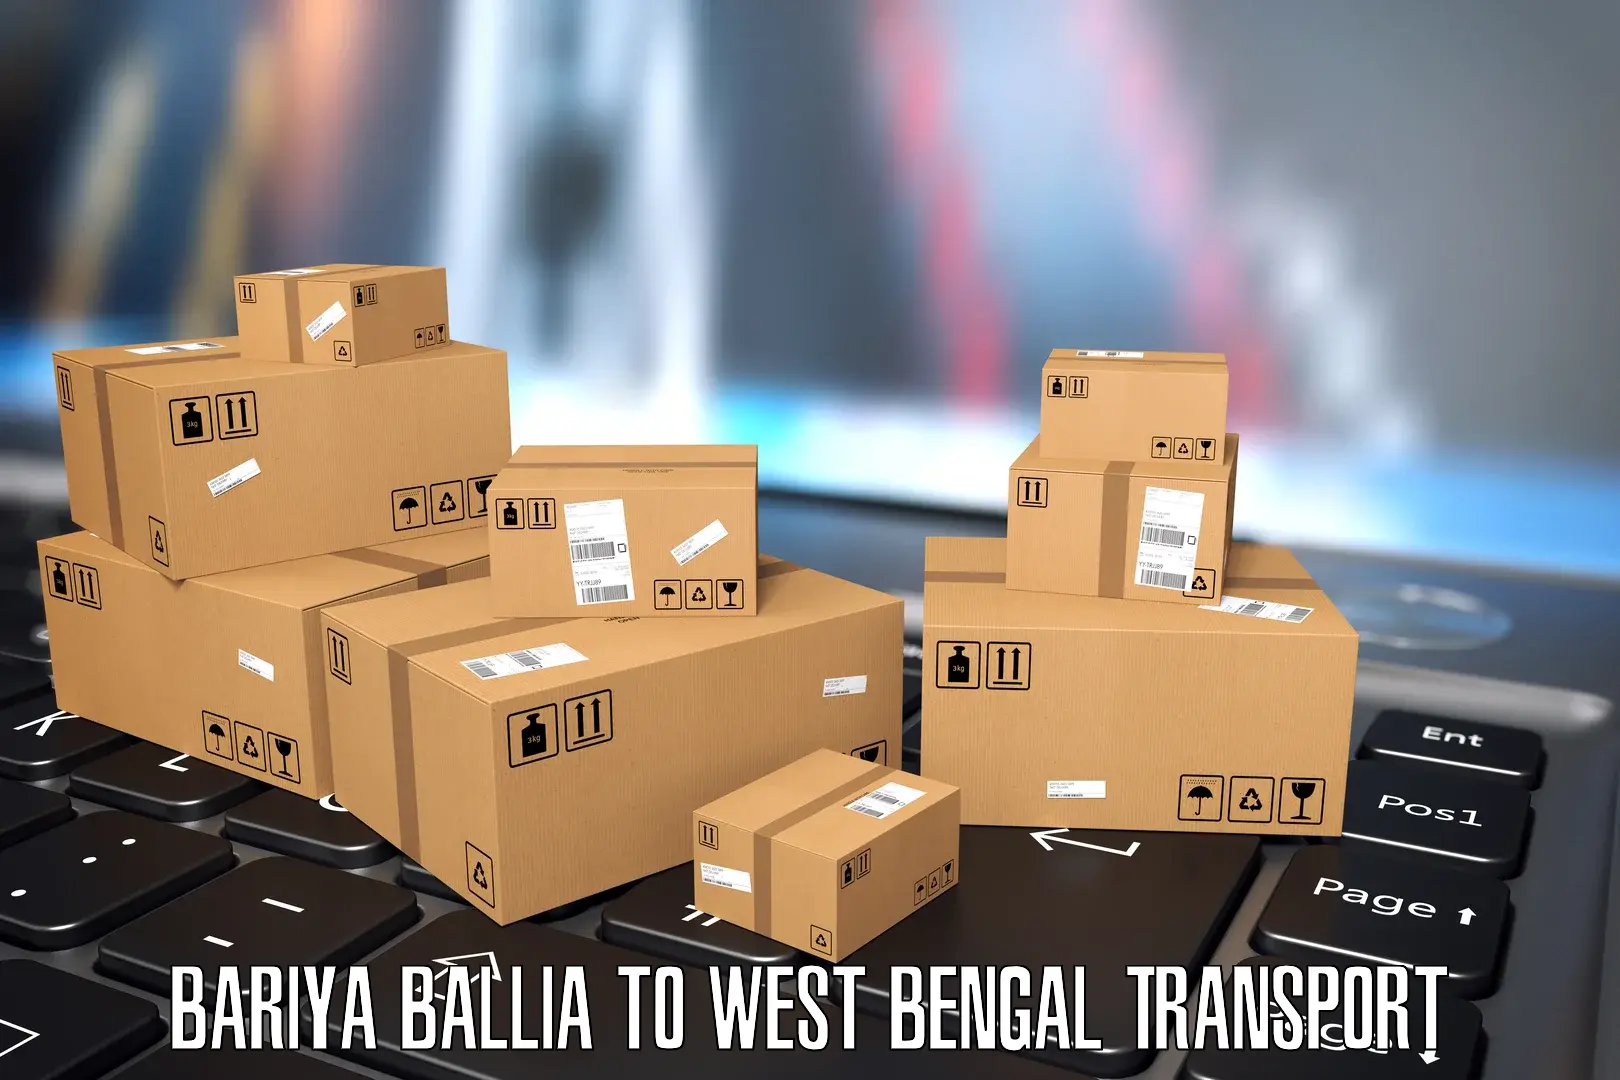 Furniture transport service Bariya Ballia to Cooch Behar